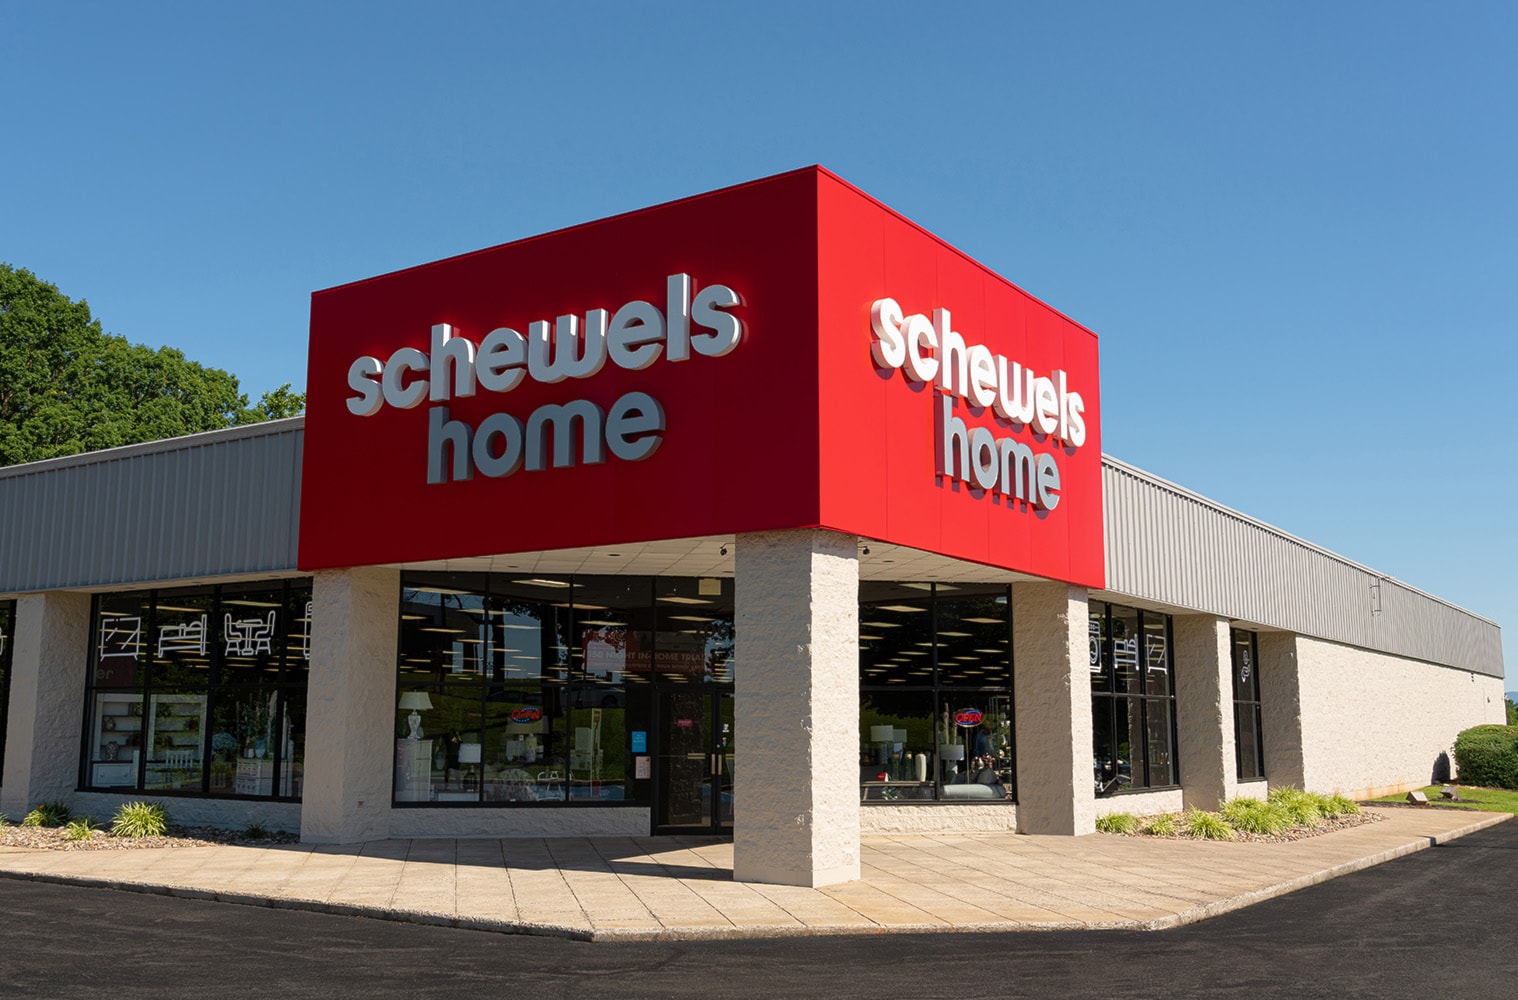 Schewel's Home Store